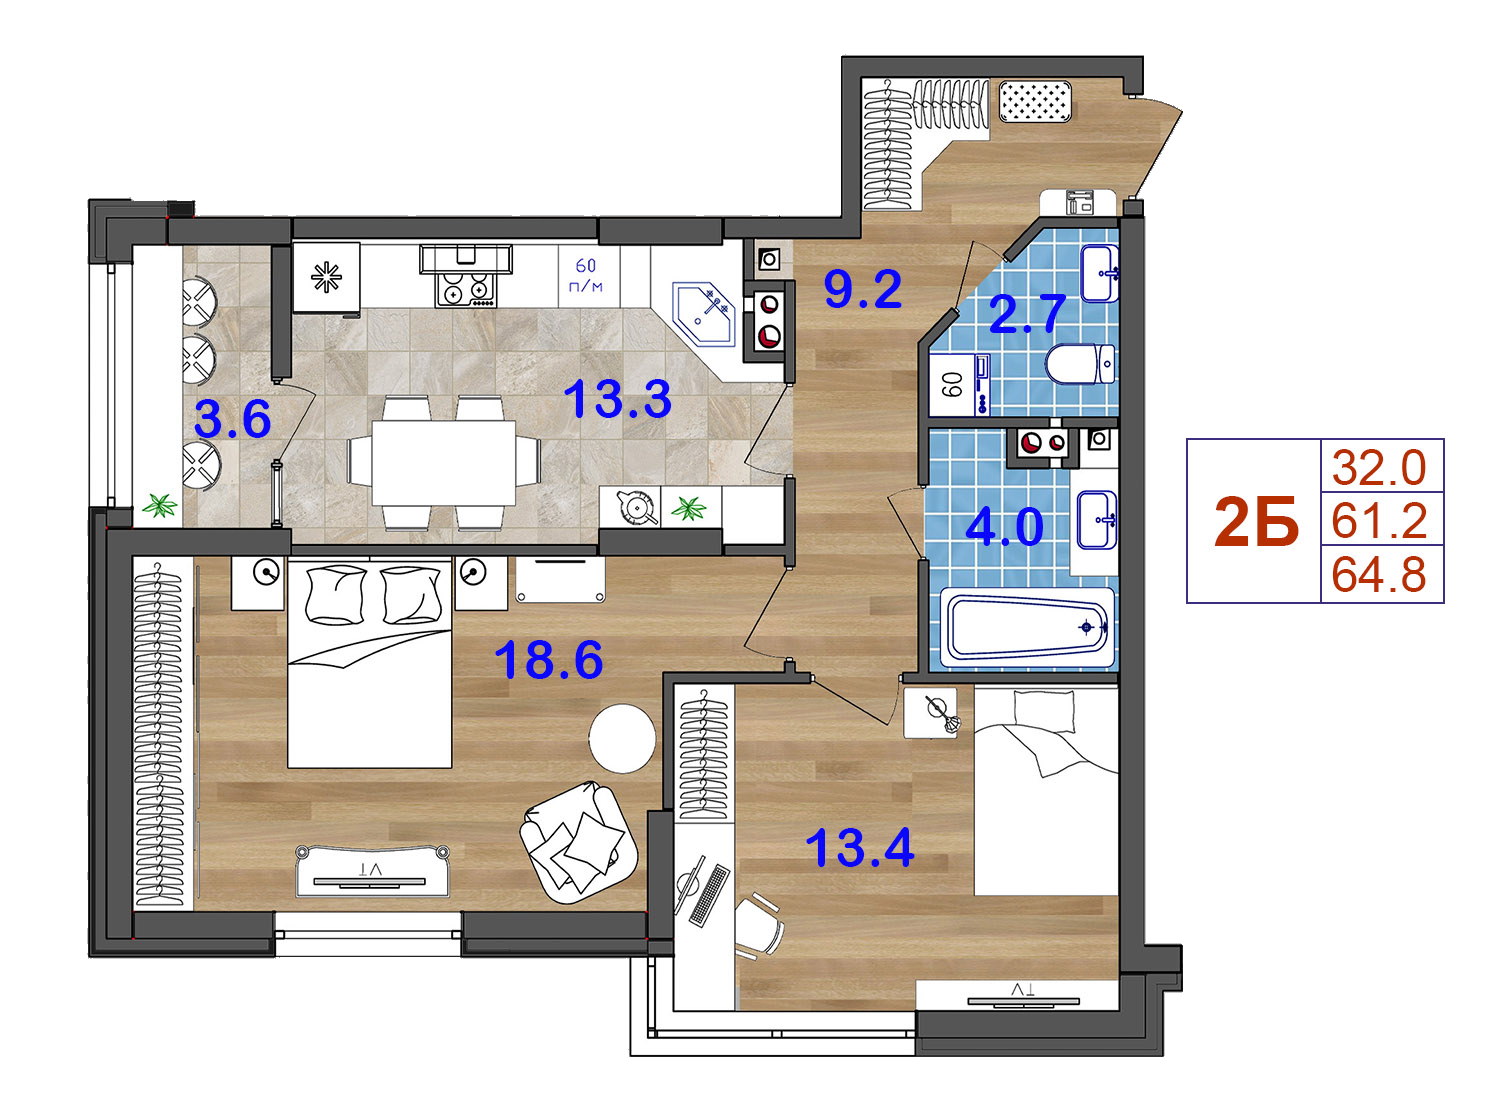 2-комнатная квартира с лоджией, квартира с лоджией в новострое, Квартира с лоджией 65 м2 на котовского, купить просторную двухкомнатную квартиру в новострое на котовского